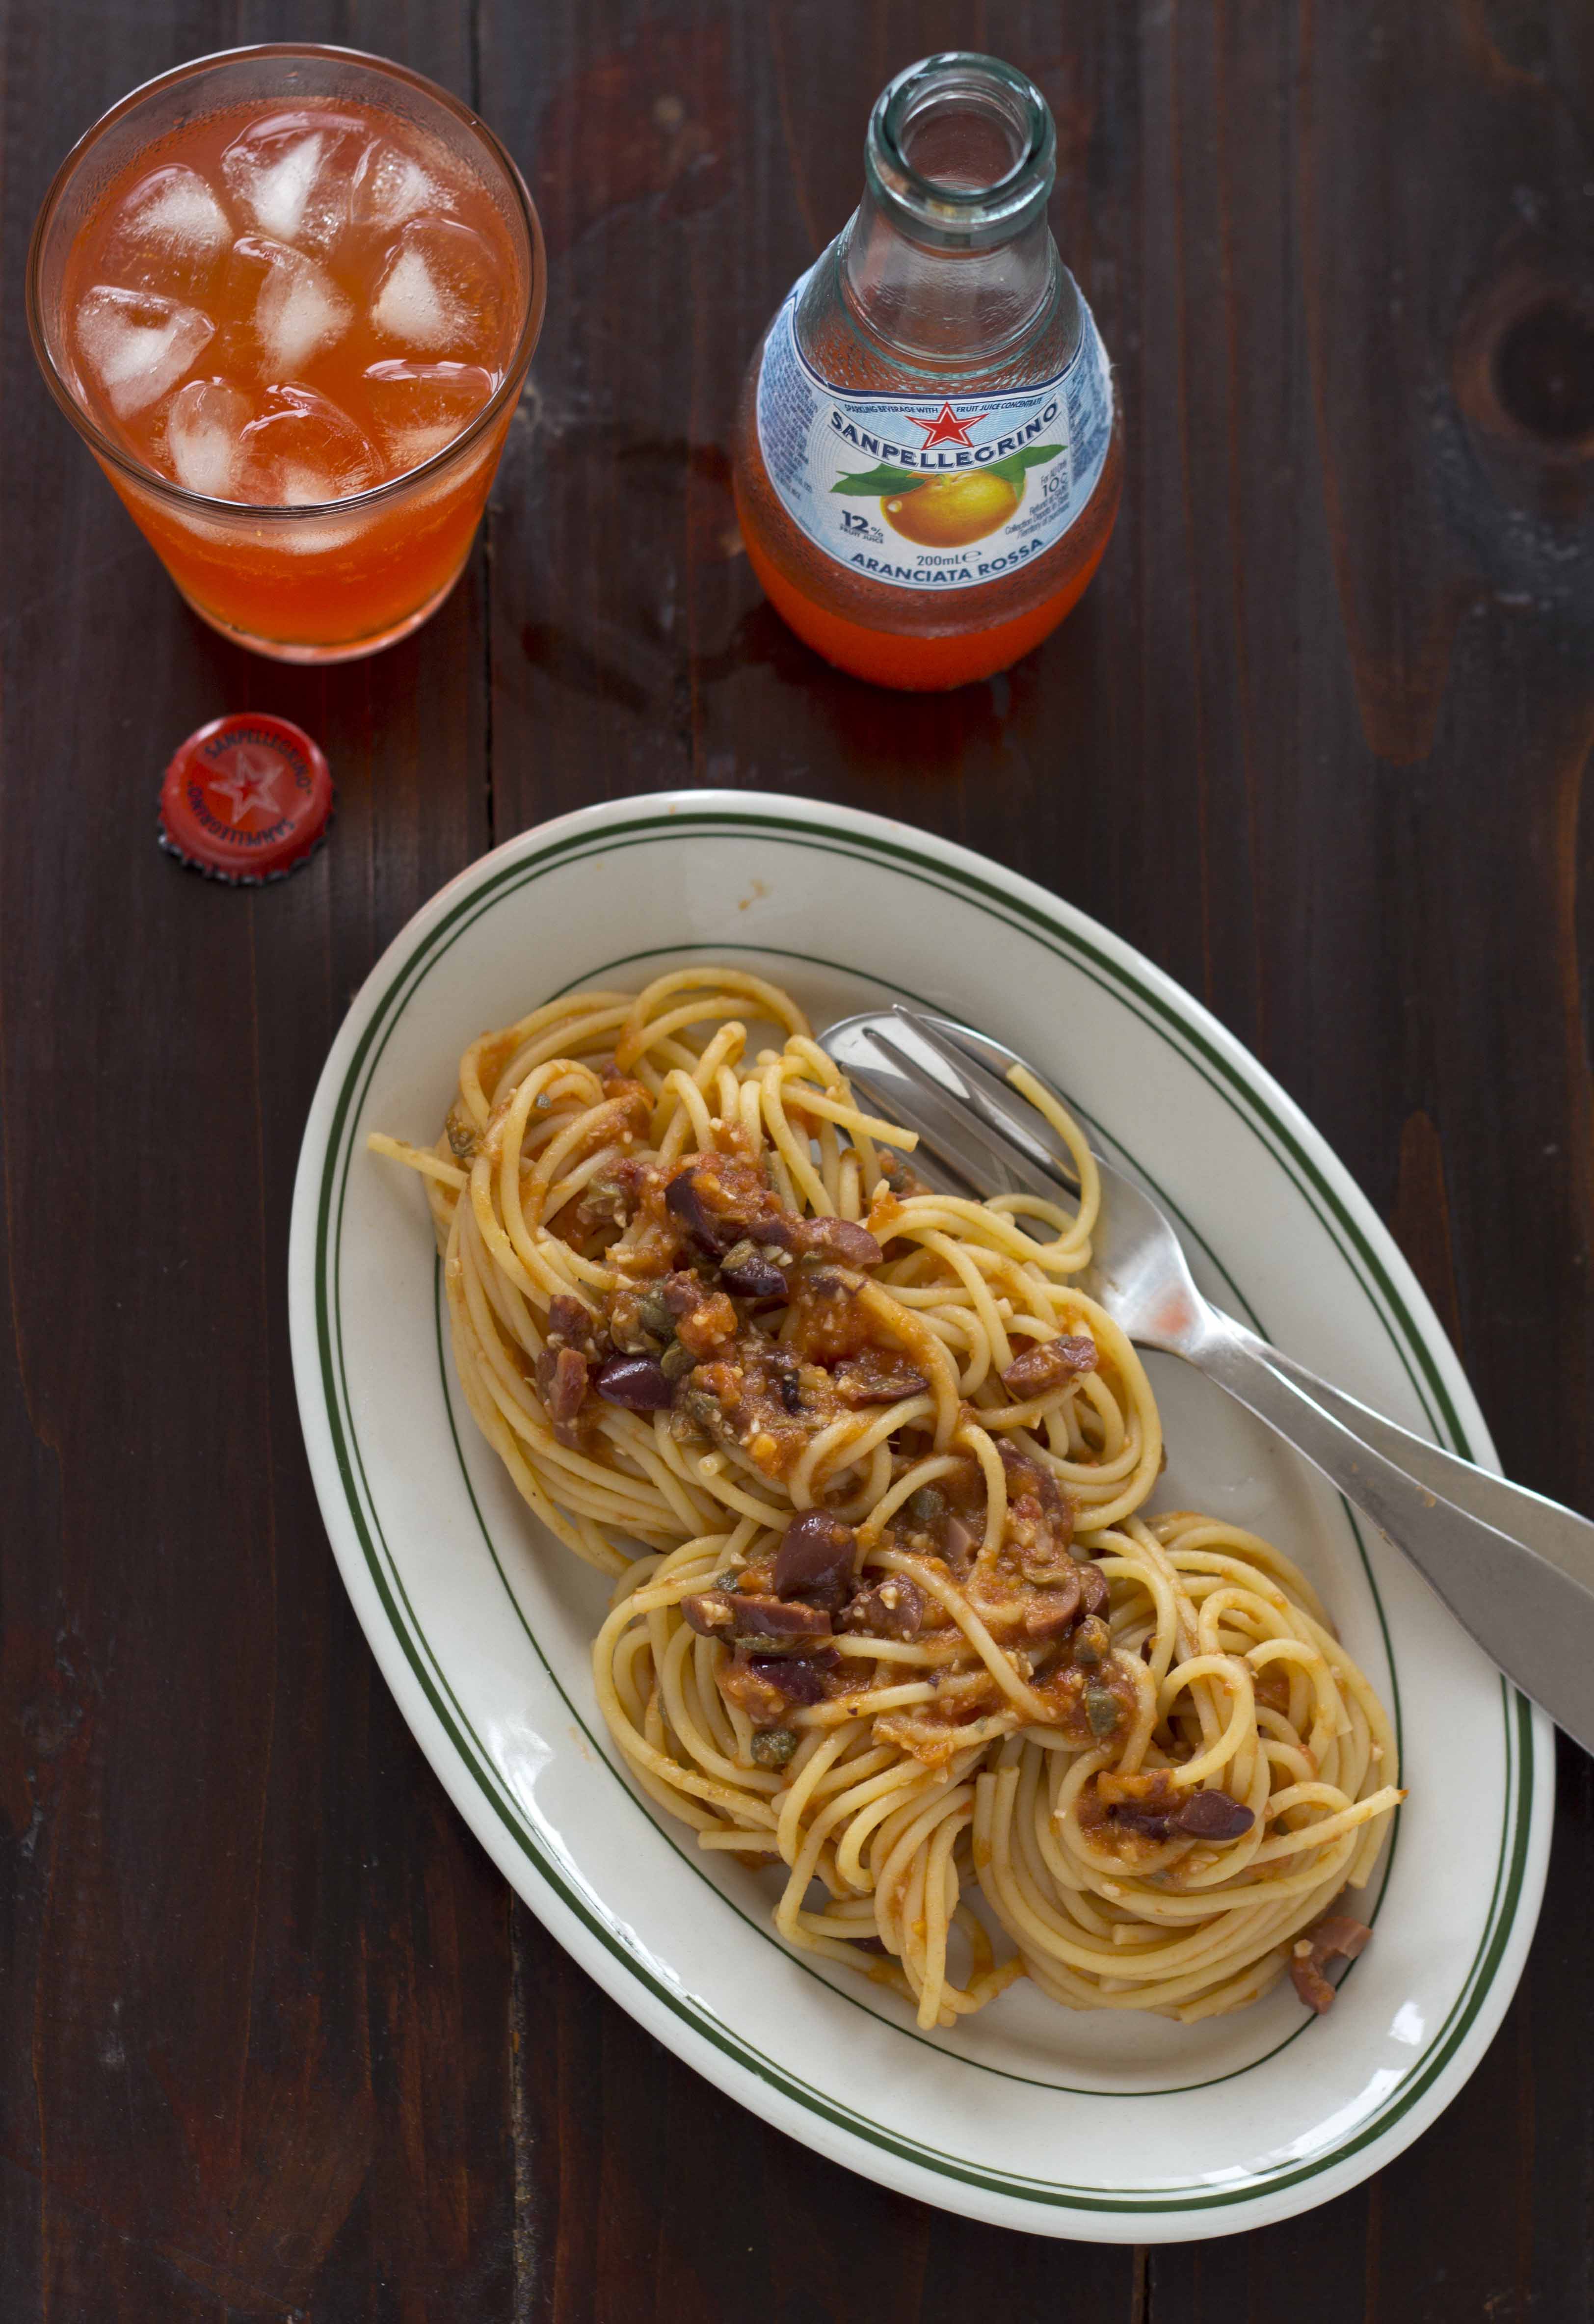 Spaghetti alla puttanesca (literally means "whore's spaghetti") is ...